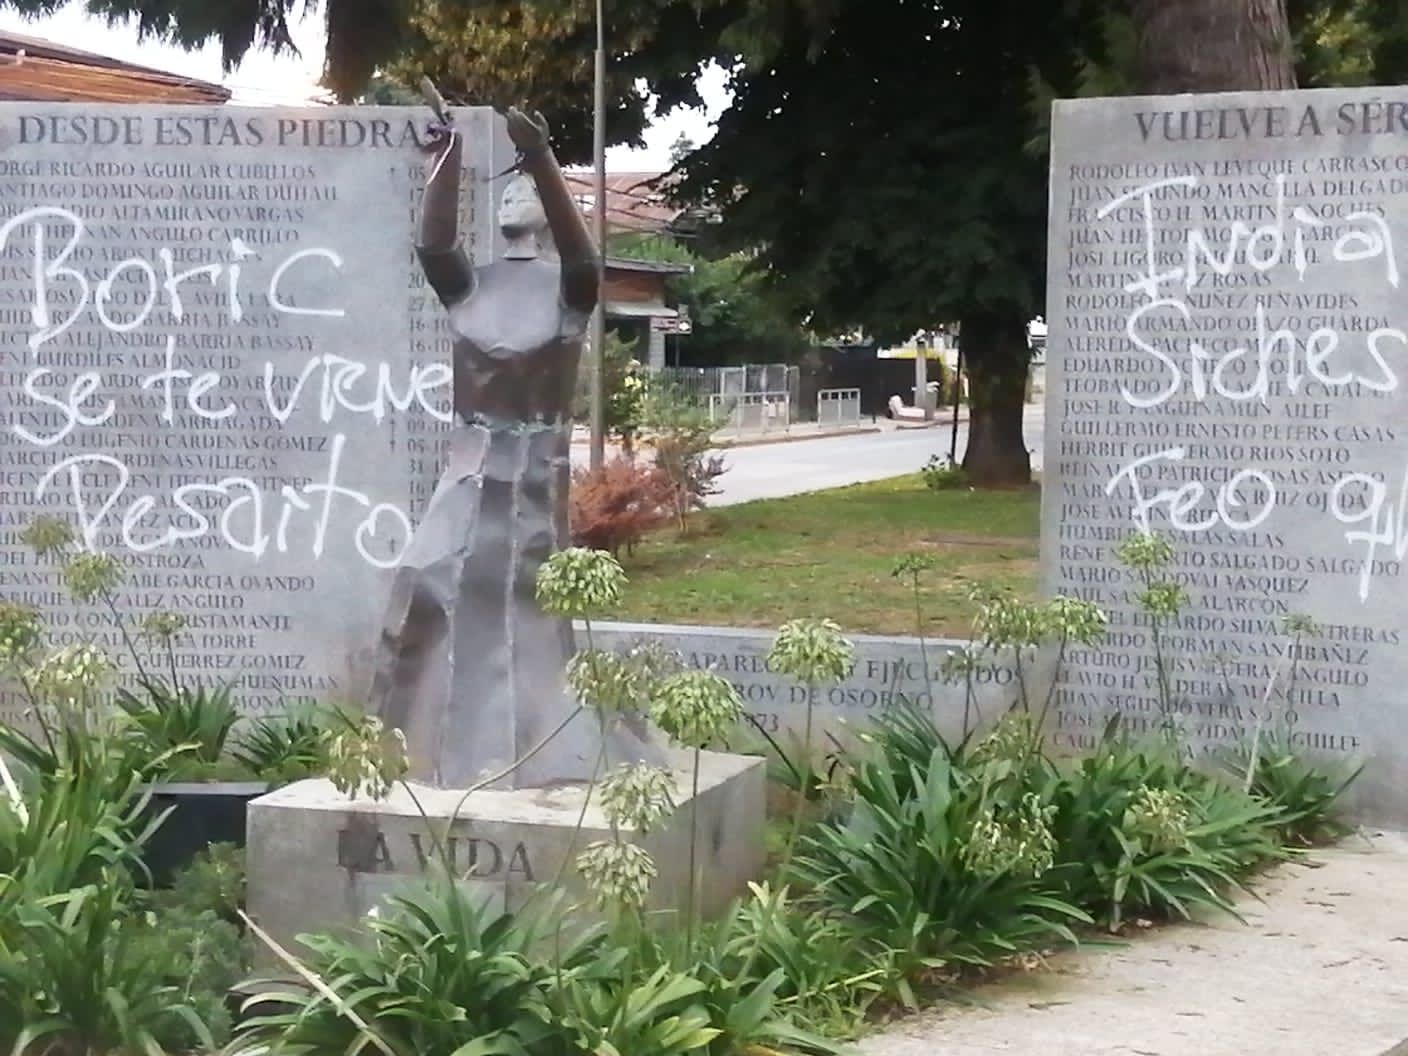 Memorial por La Paz de Osorno fue nuevamente vandalizado: Es la quinta vez